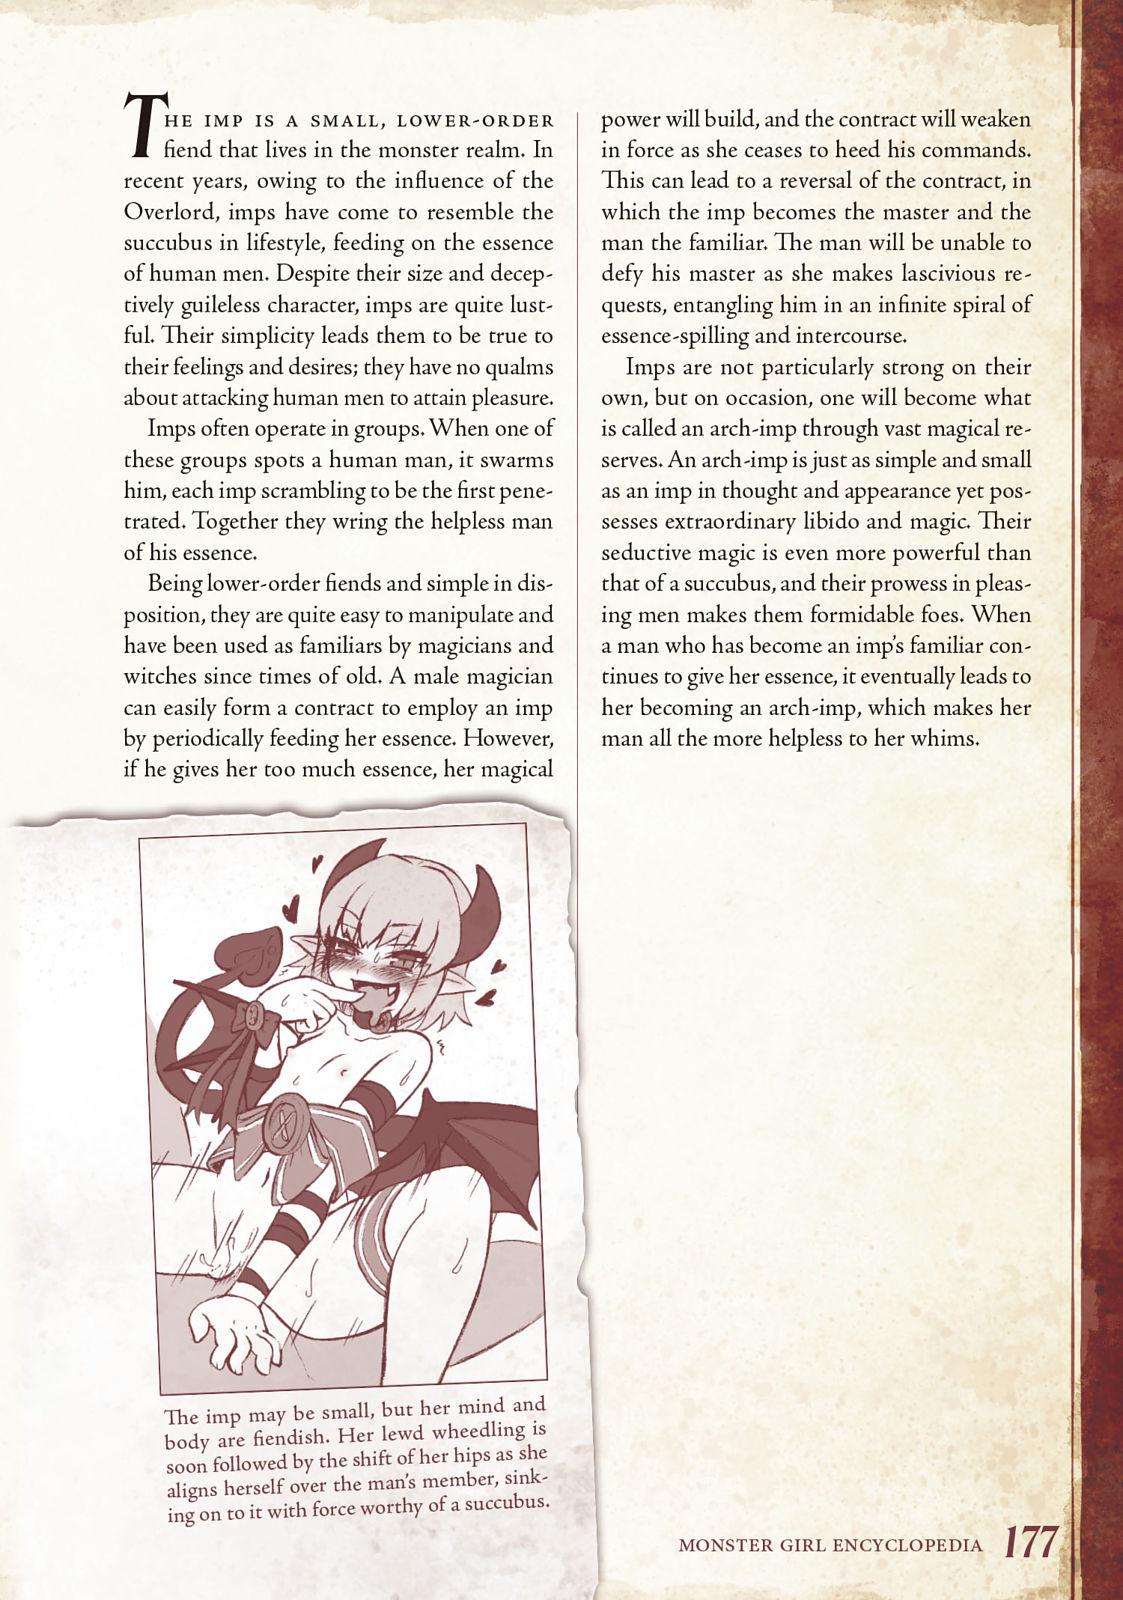 Monster Girl Encyclopedia Vol. 1 177